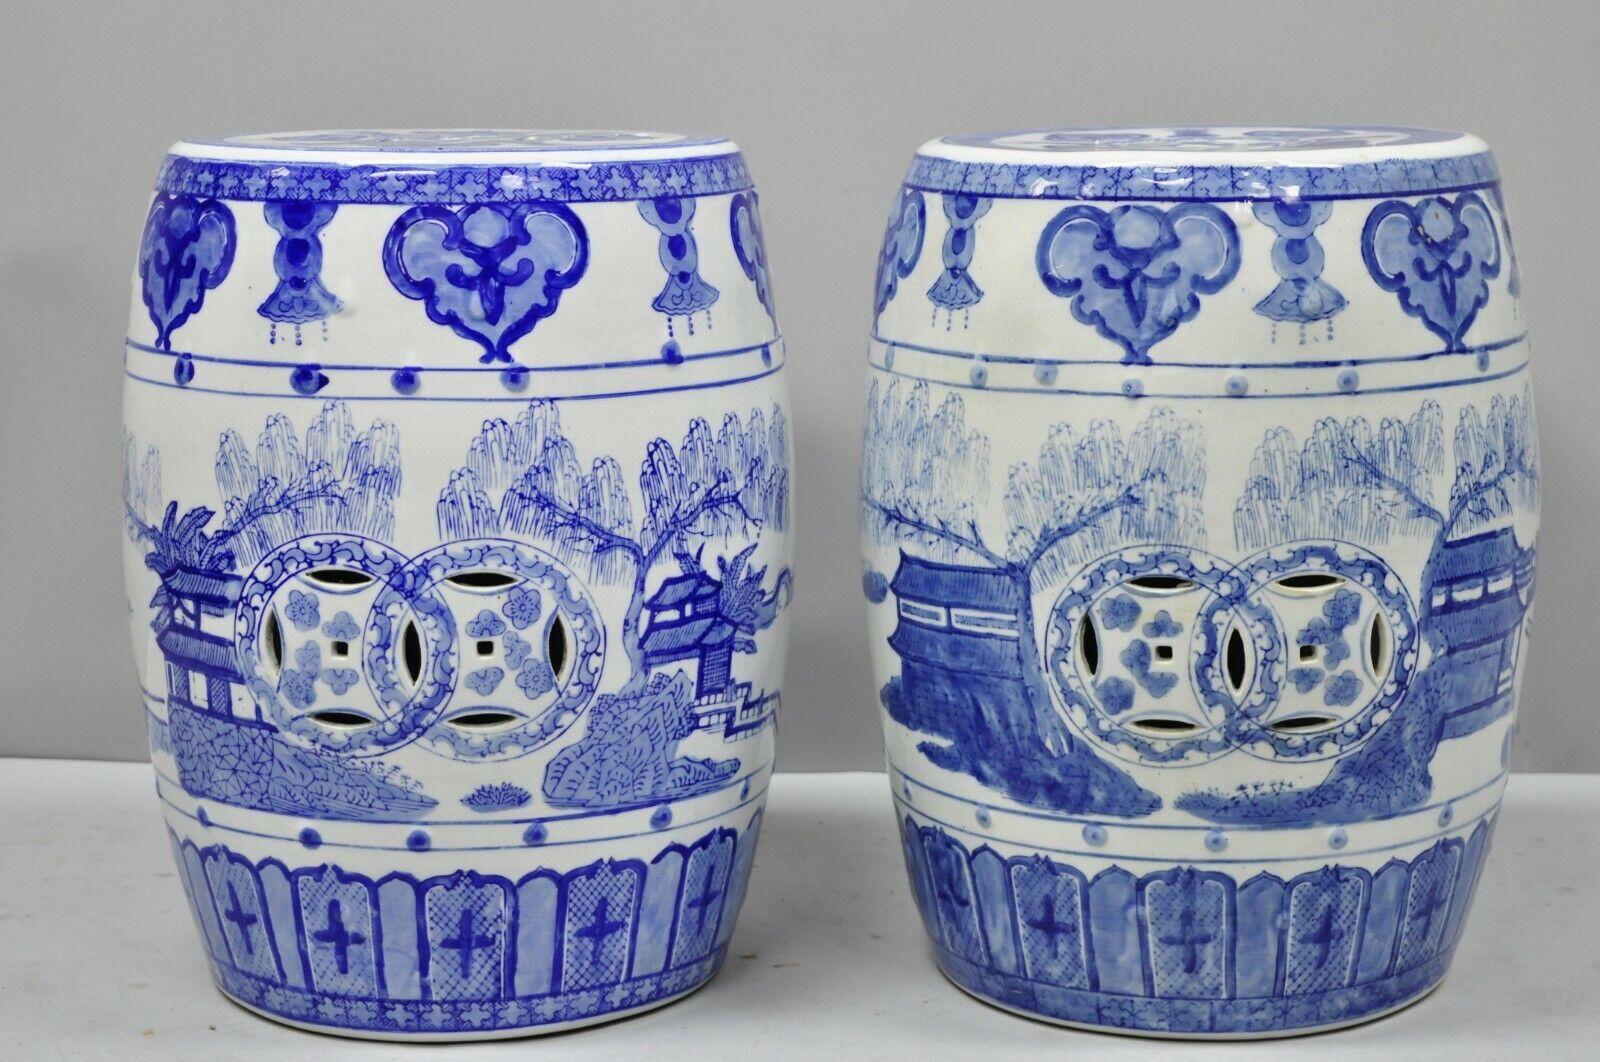 Pair of Blue & White Pierced Porcelain Chinese Drum Garden Seats. Artikel verfügt über eine Porzellan-Konstruktion, durchbrochene Dekoration, weiße und blaue Farbe glasiert Dekoration, großen Stil Form. Vermutlich aus dem 20. Jahrhundert.